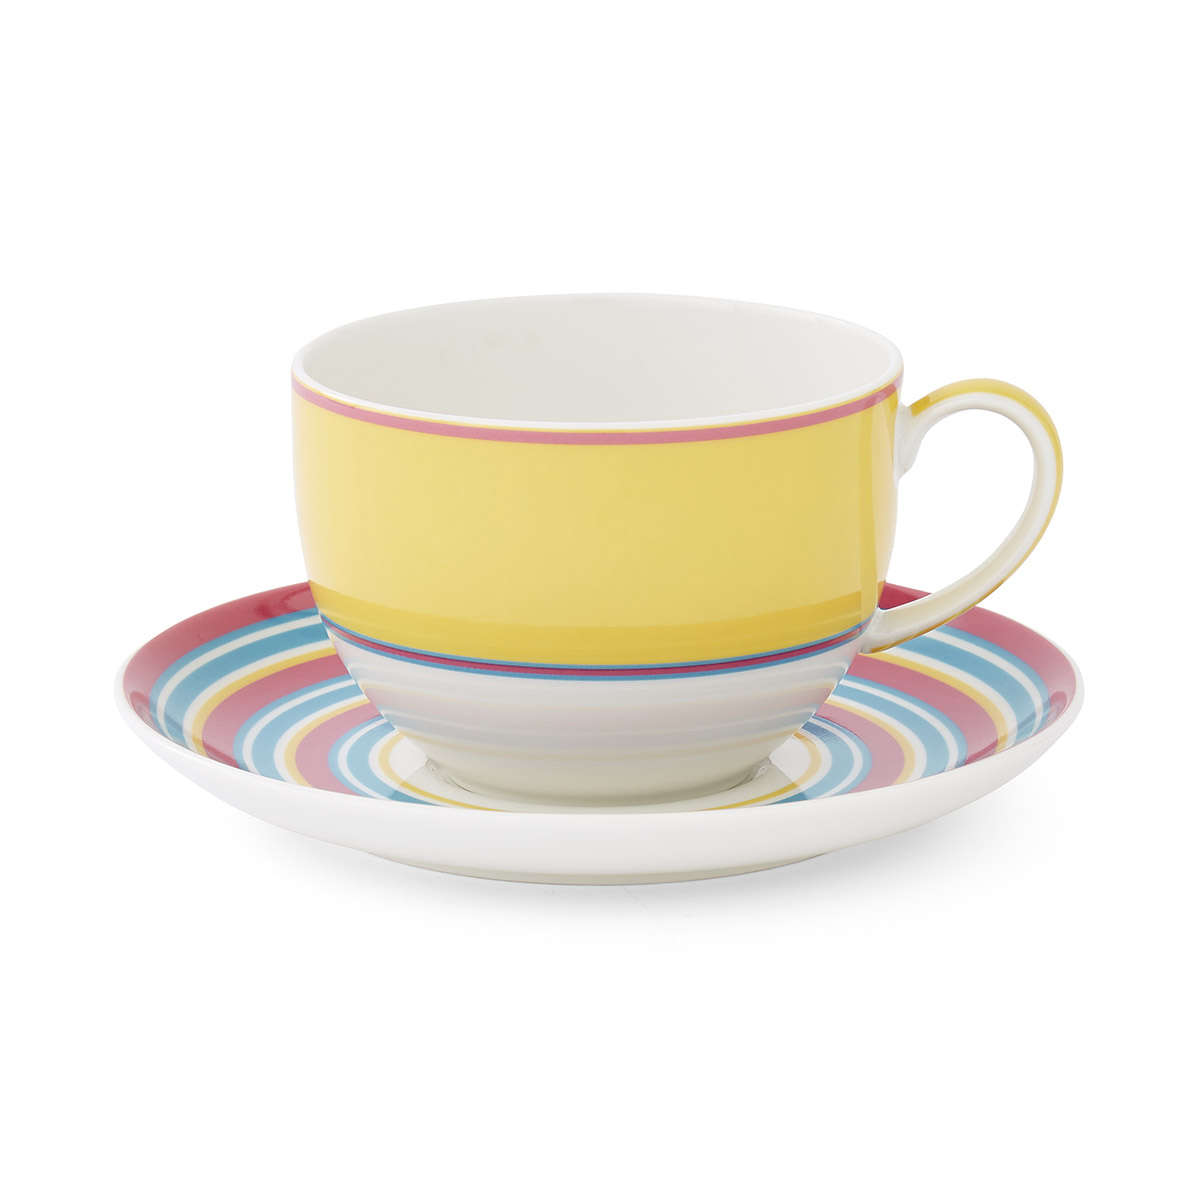 Kit Kemp Calypso Teacup & Saucer - Yellow image number null